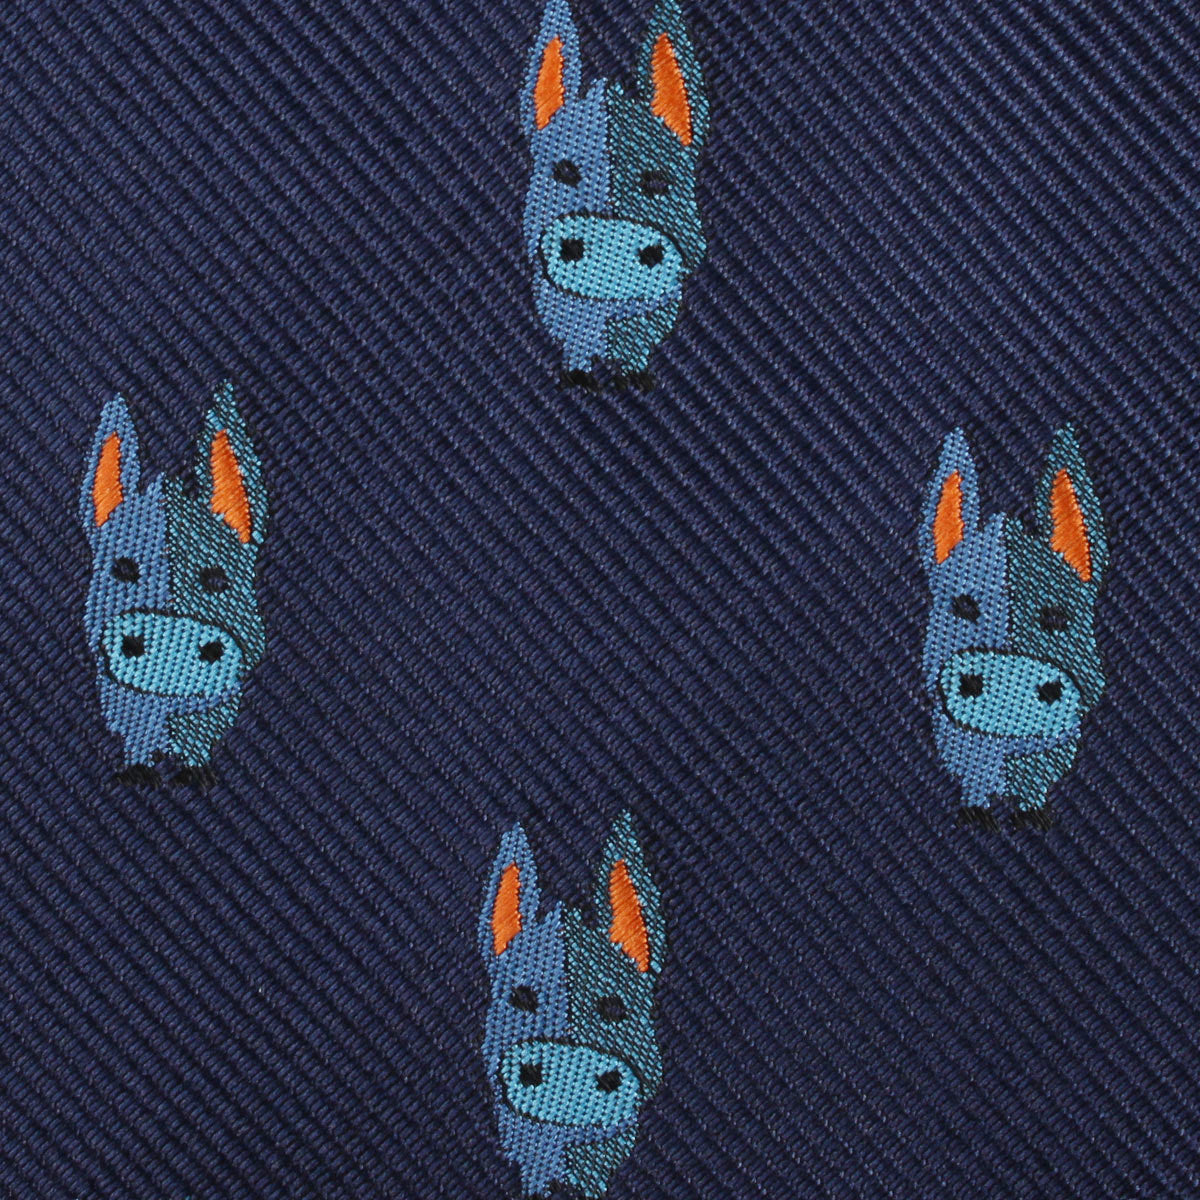 Blue Donkey Fabric Kids Bowtie